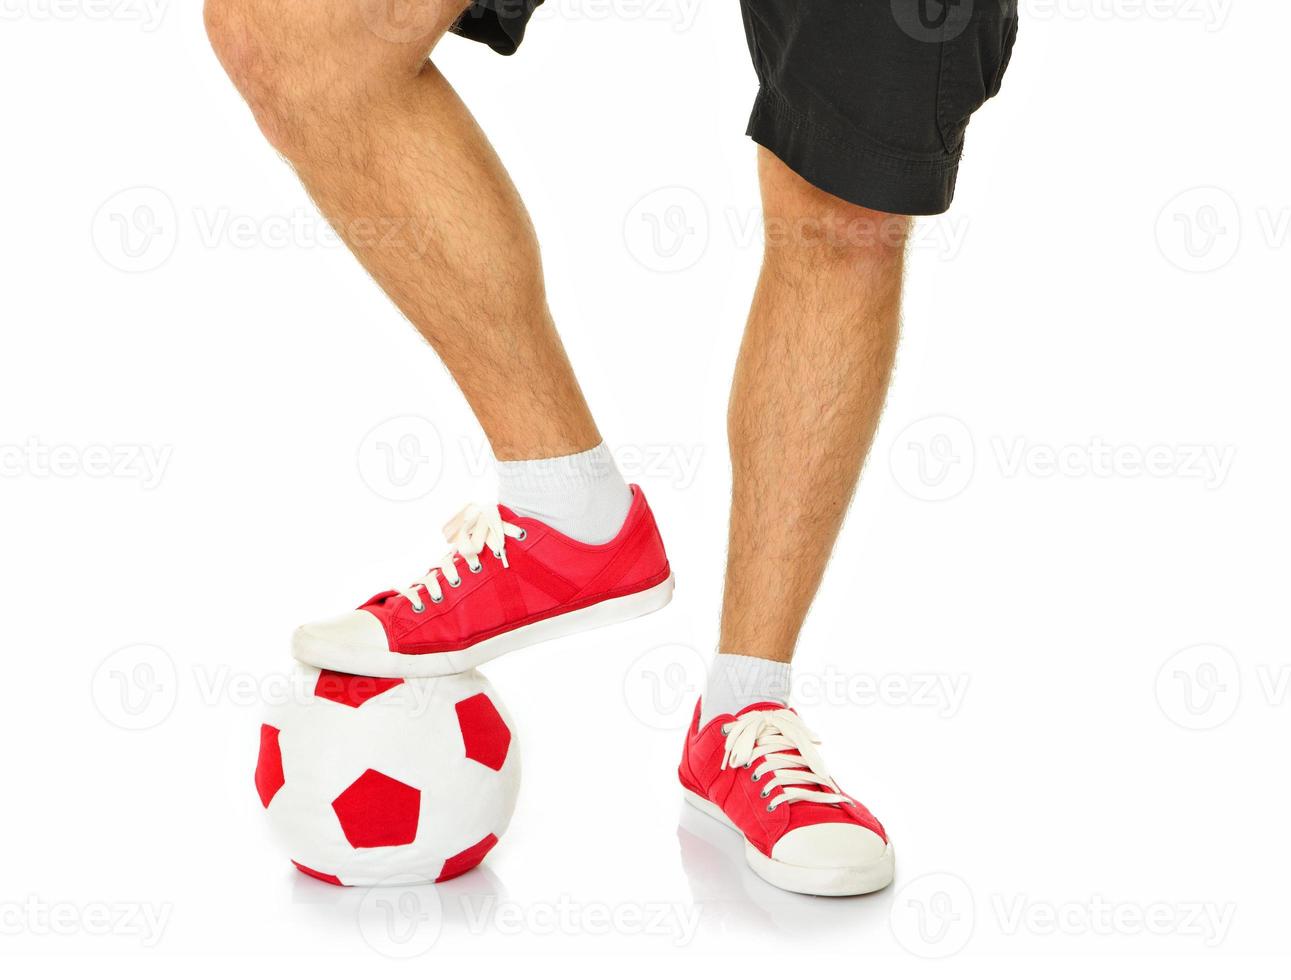 piernas de un futbolista foto